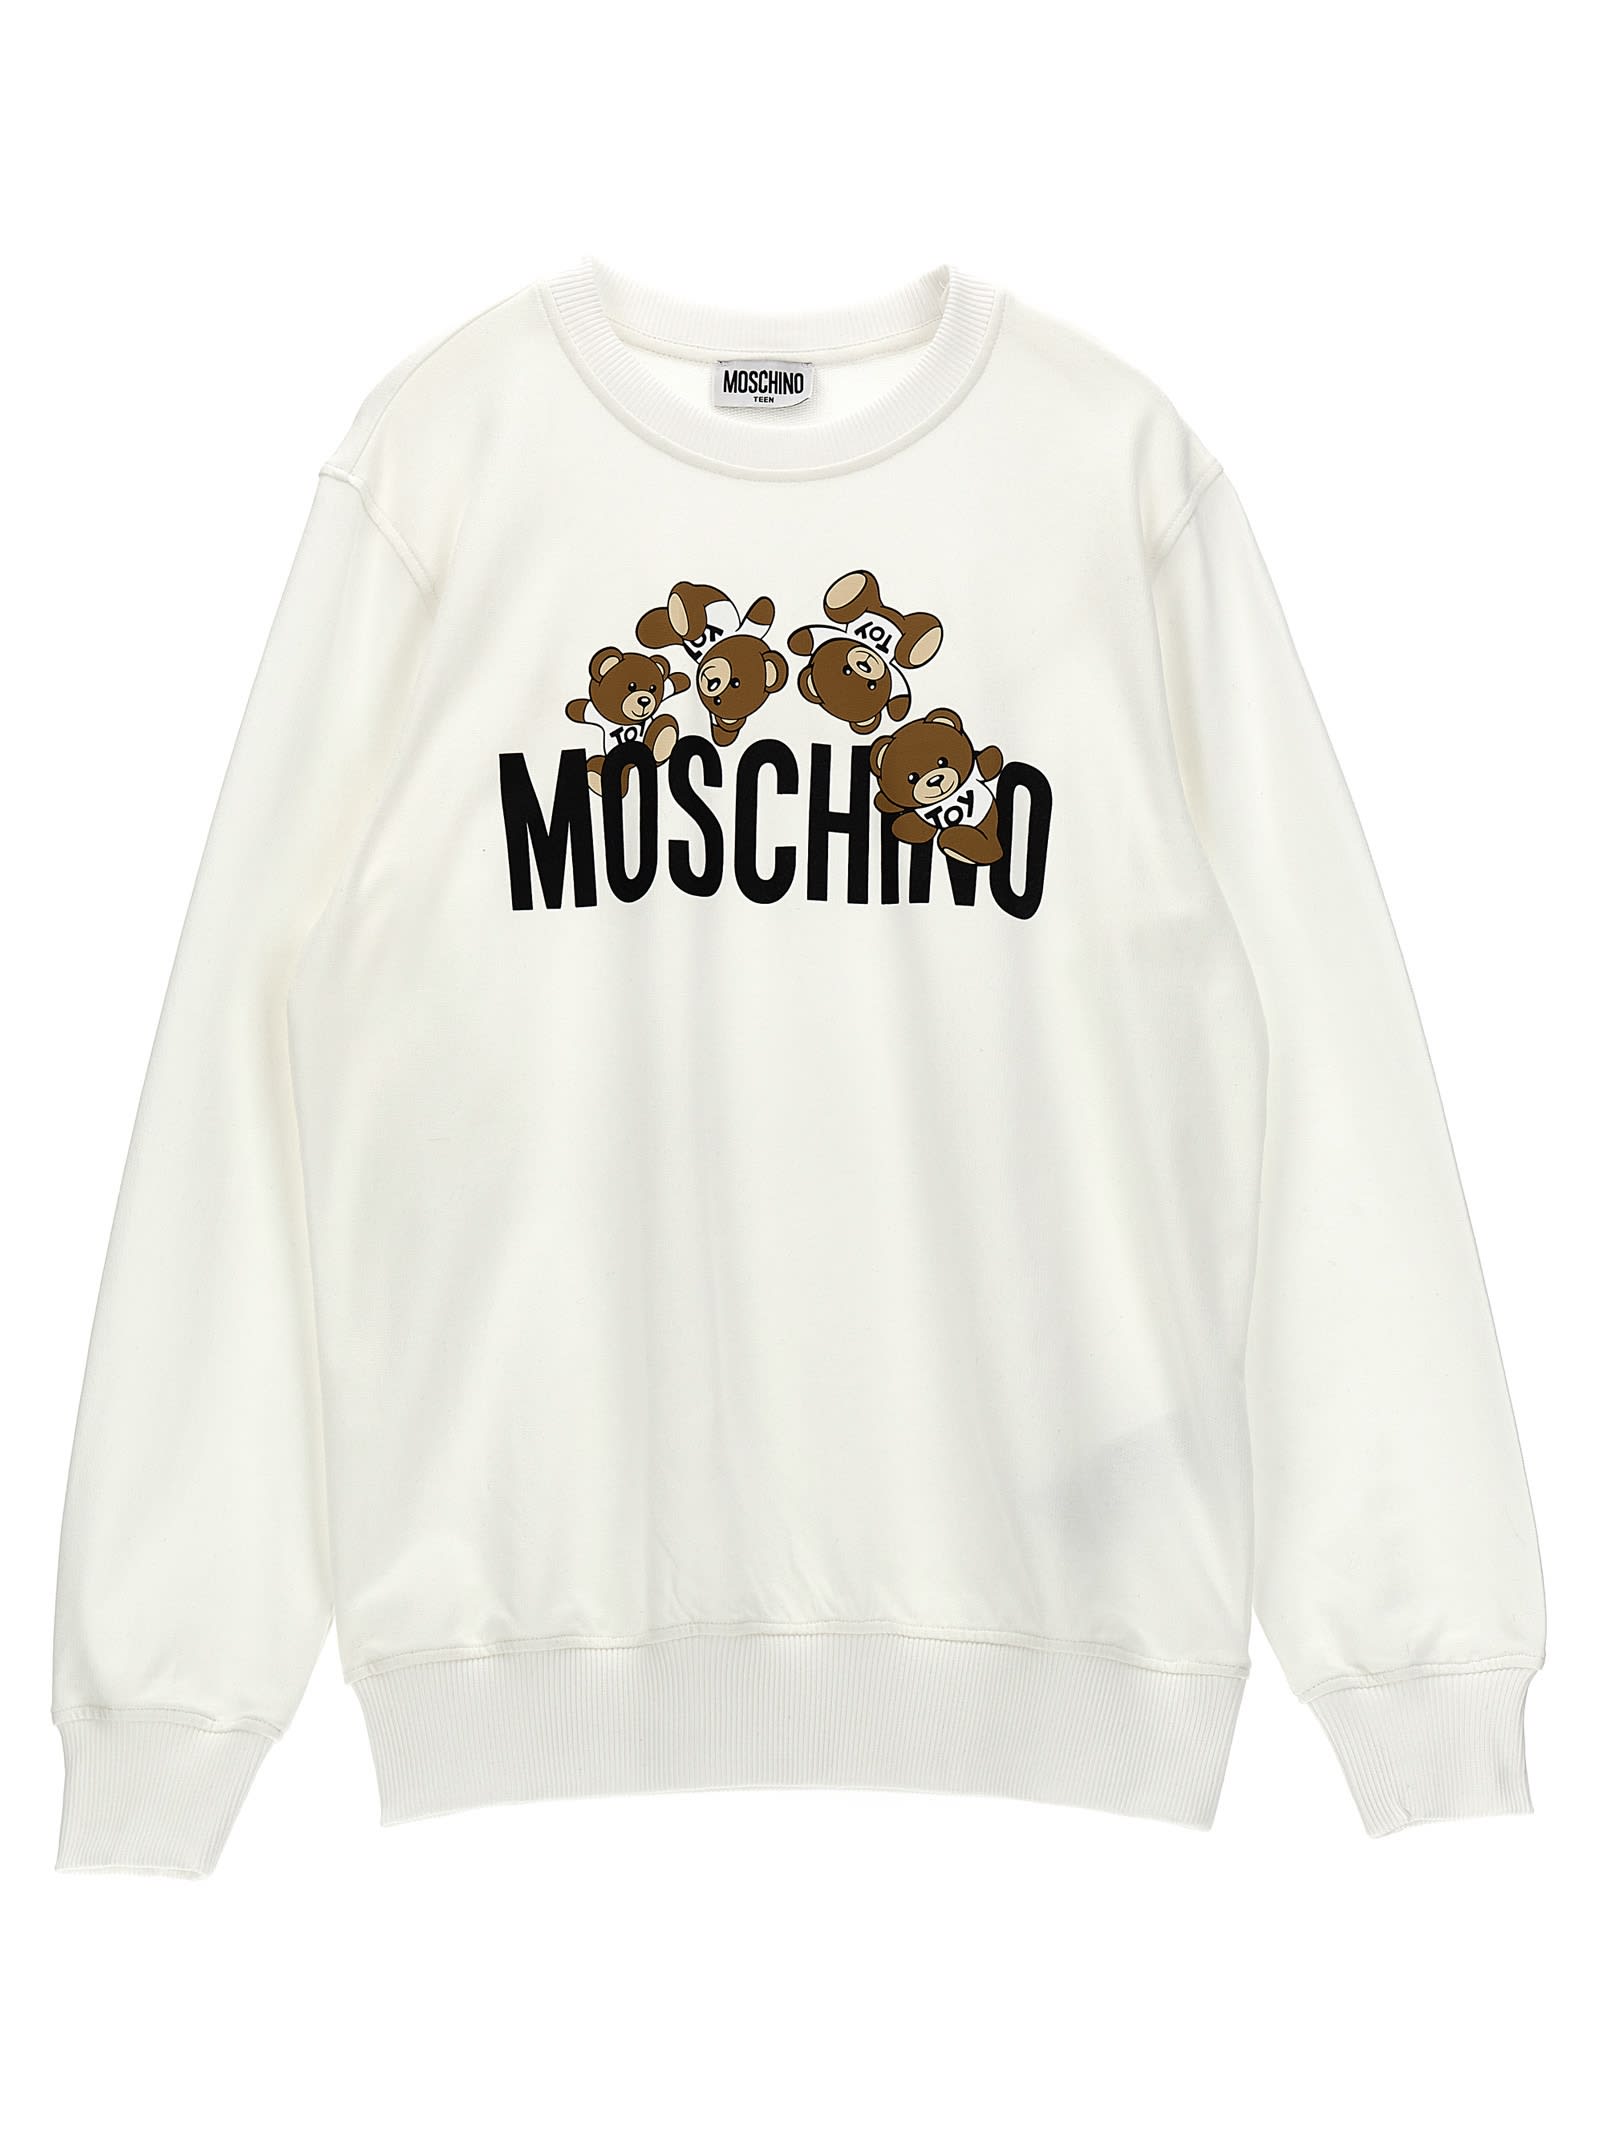 Moschino Kids' Logo Print Sweatshirt In White